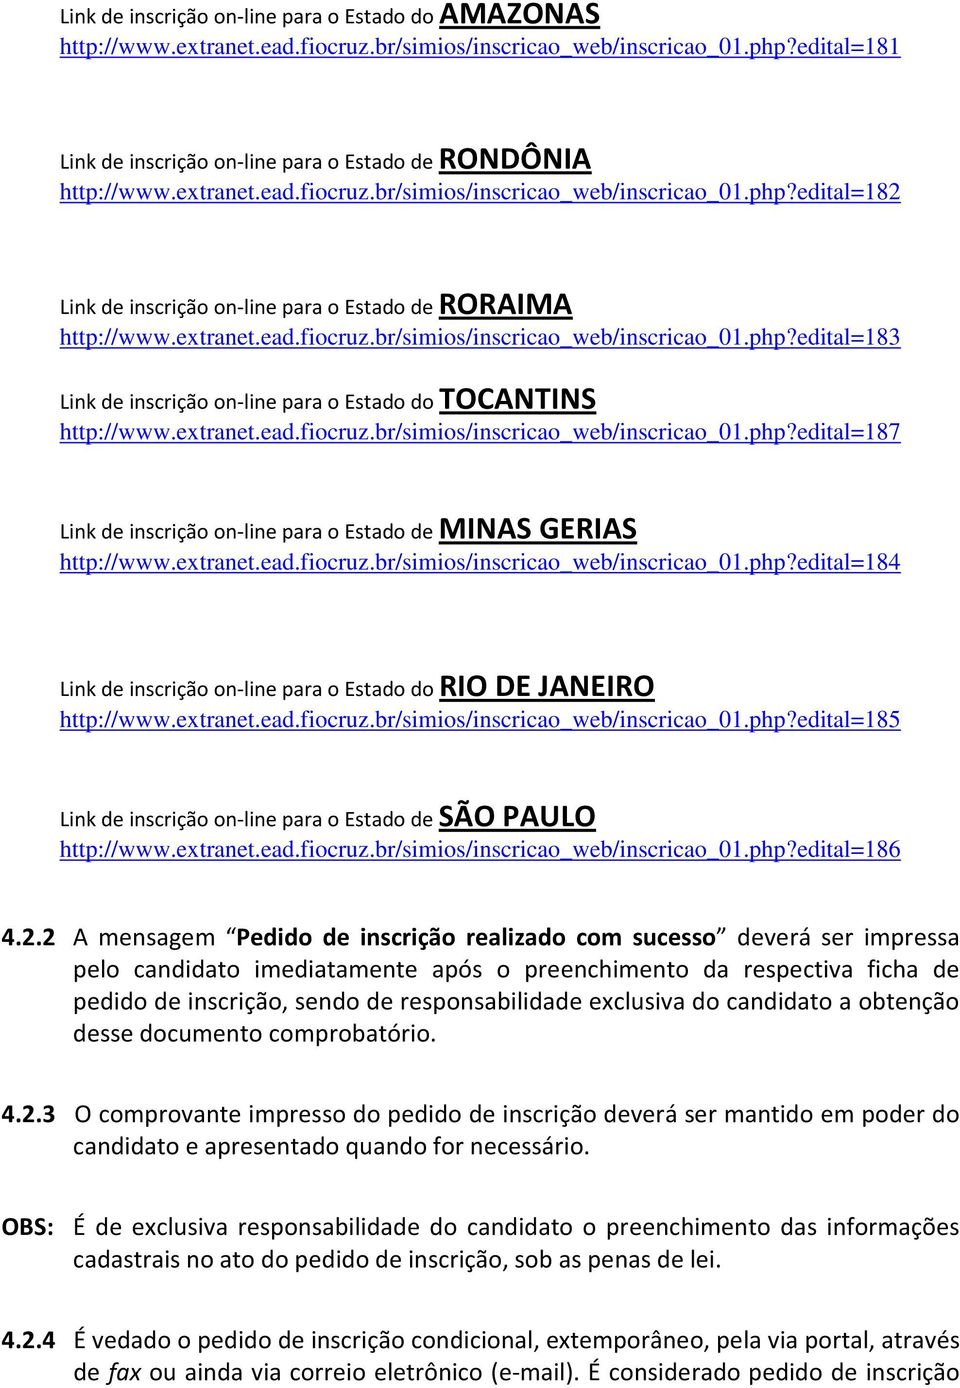 extranet.ead.fiocruz.br/simios/inscricao_web/inscricao_01.php?edital=187 Link de inscrição on-line para o Estado de MINAS GERIAS http://www.extranet.ead.fiocruz.br/simios/inscricao_web/inscricao_01.php?edital=184 Link de inscrição on-line para o Estado do RIO DE JANEIRO http://www.